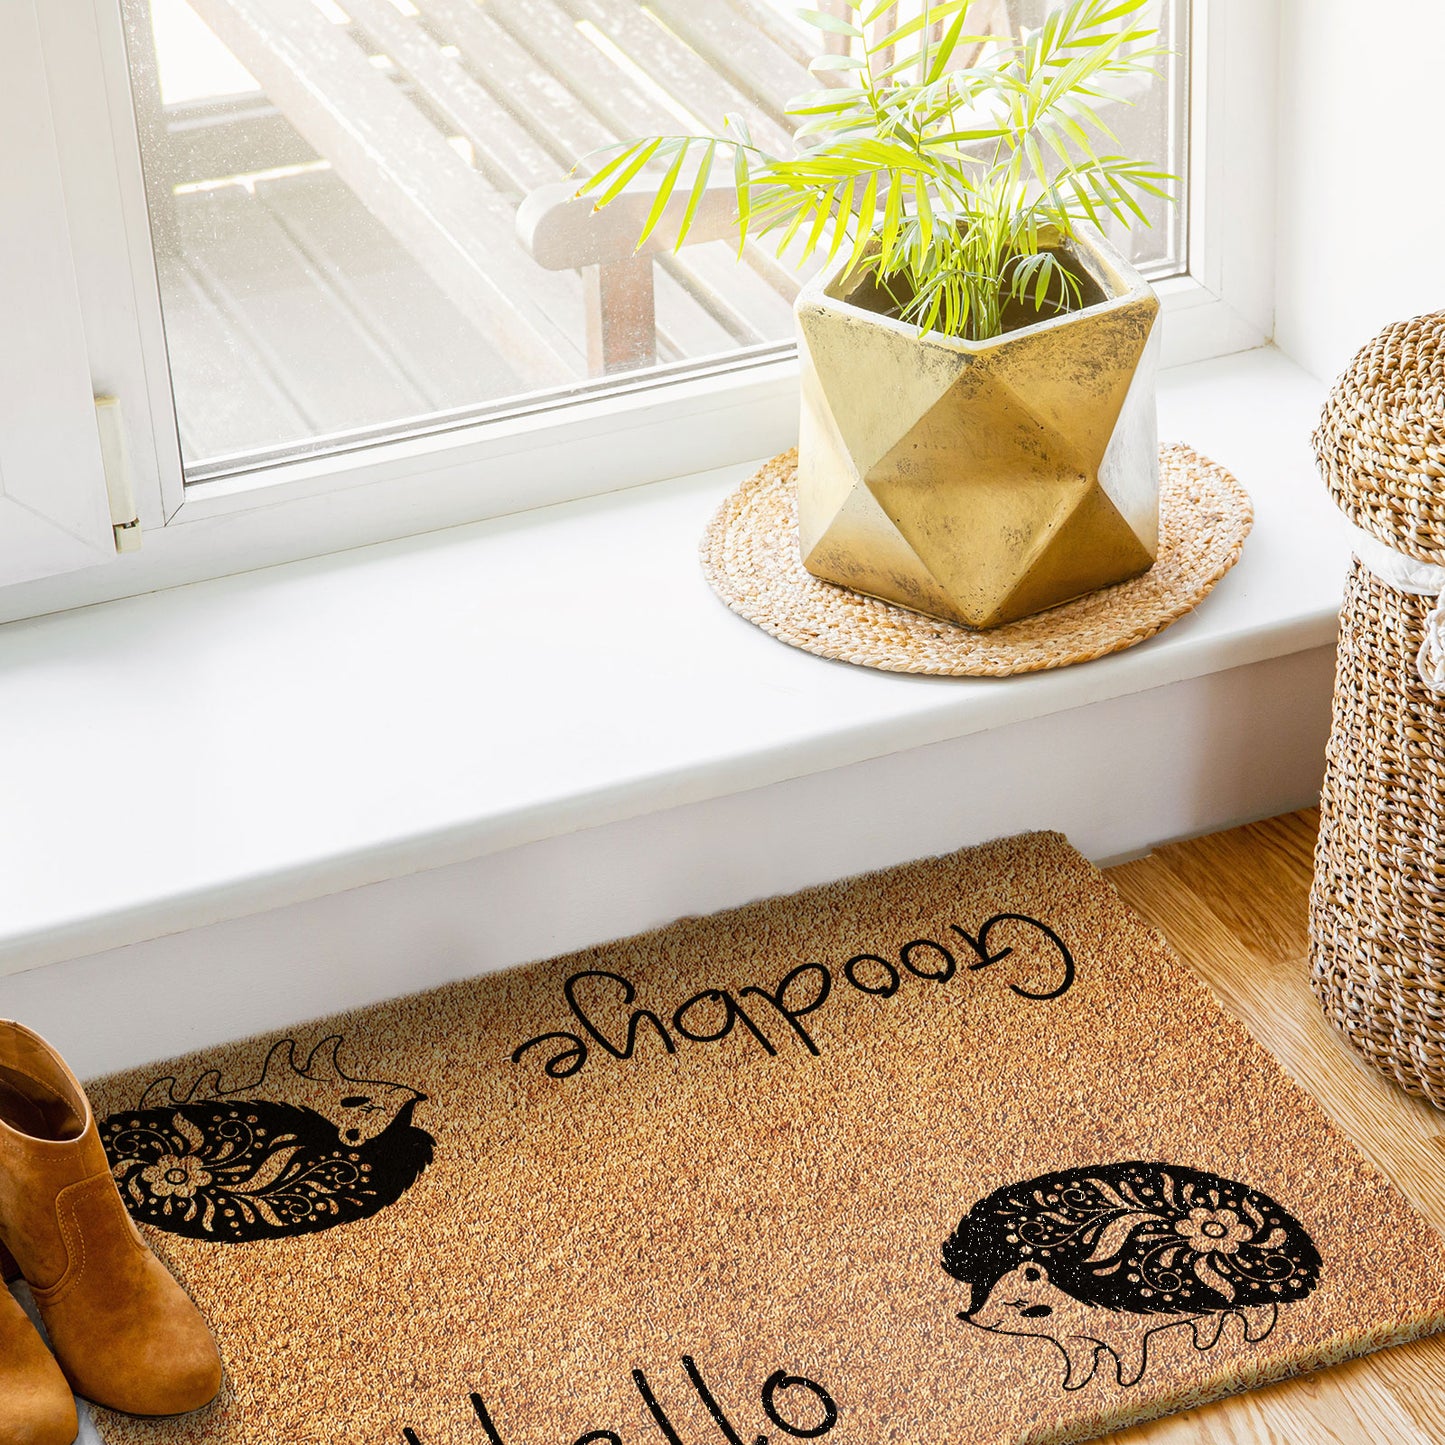 Coir Doormat - Hello Goodbye Hedgehog